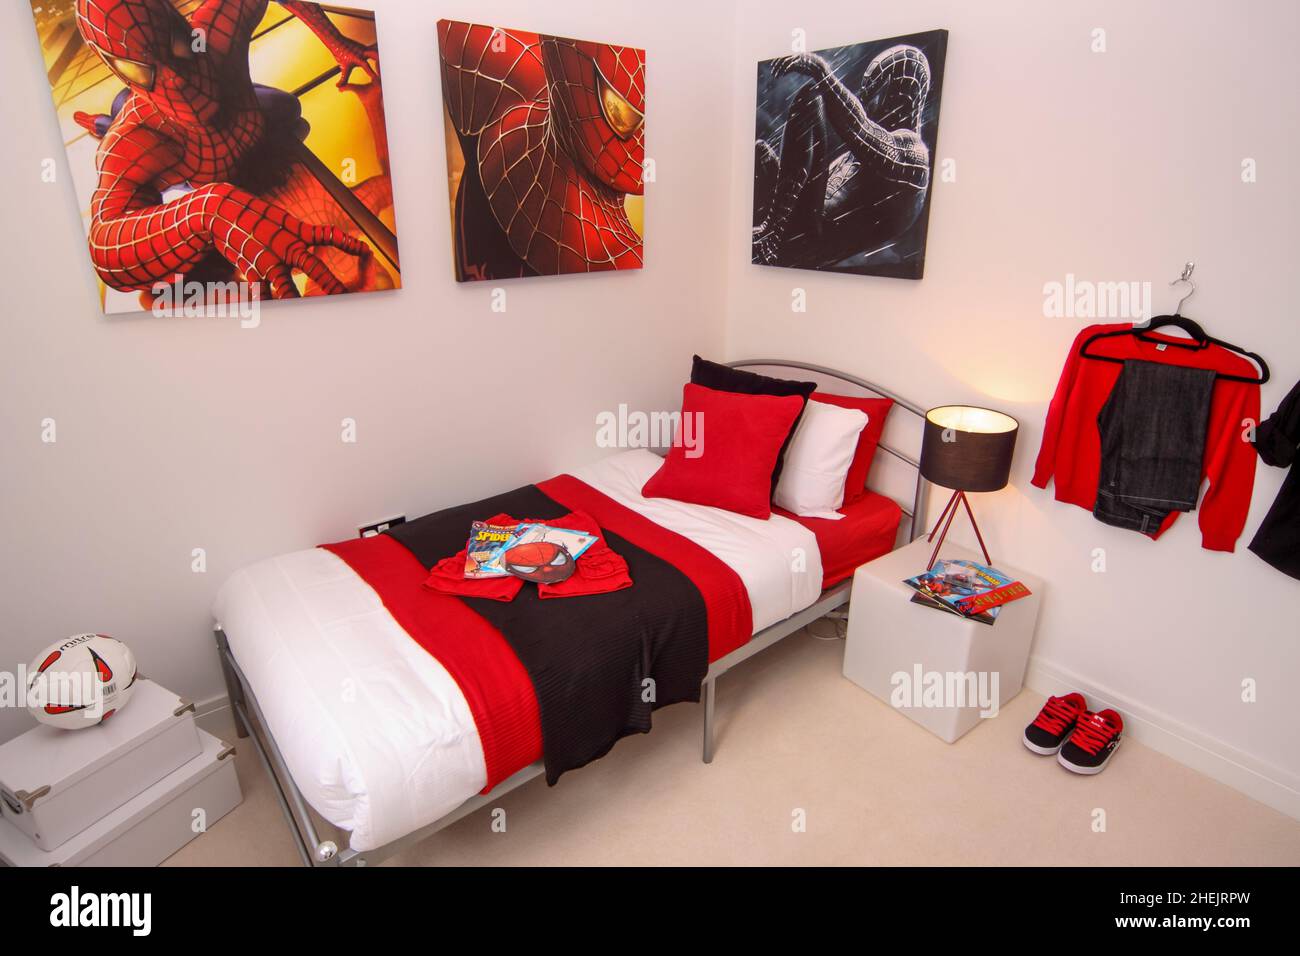 Spider uomo ragazzi camera da letto bambini, rosso tema bianco e nero, letto,  cuscini, palla di rugby, luce comodino Foto stock - Alamy